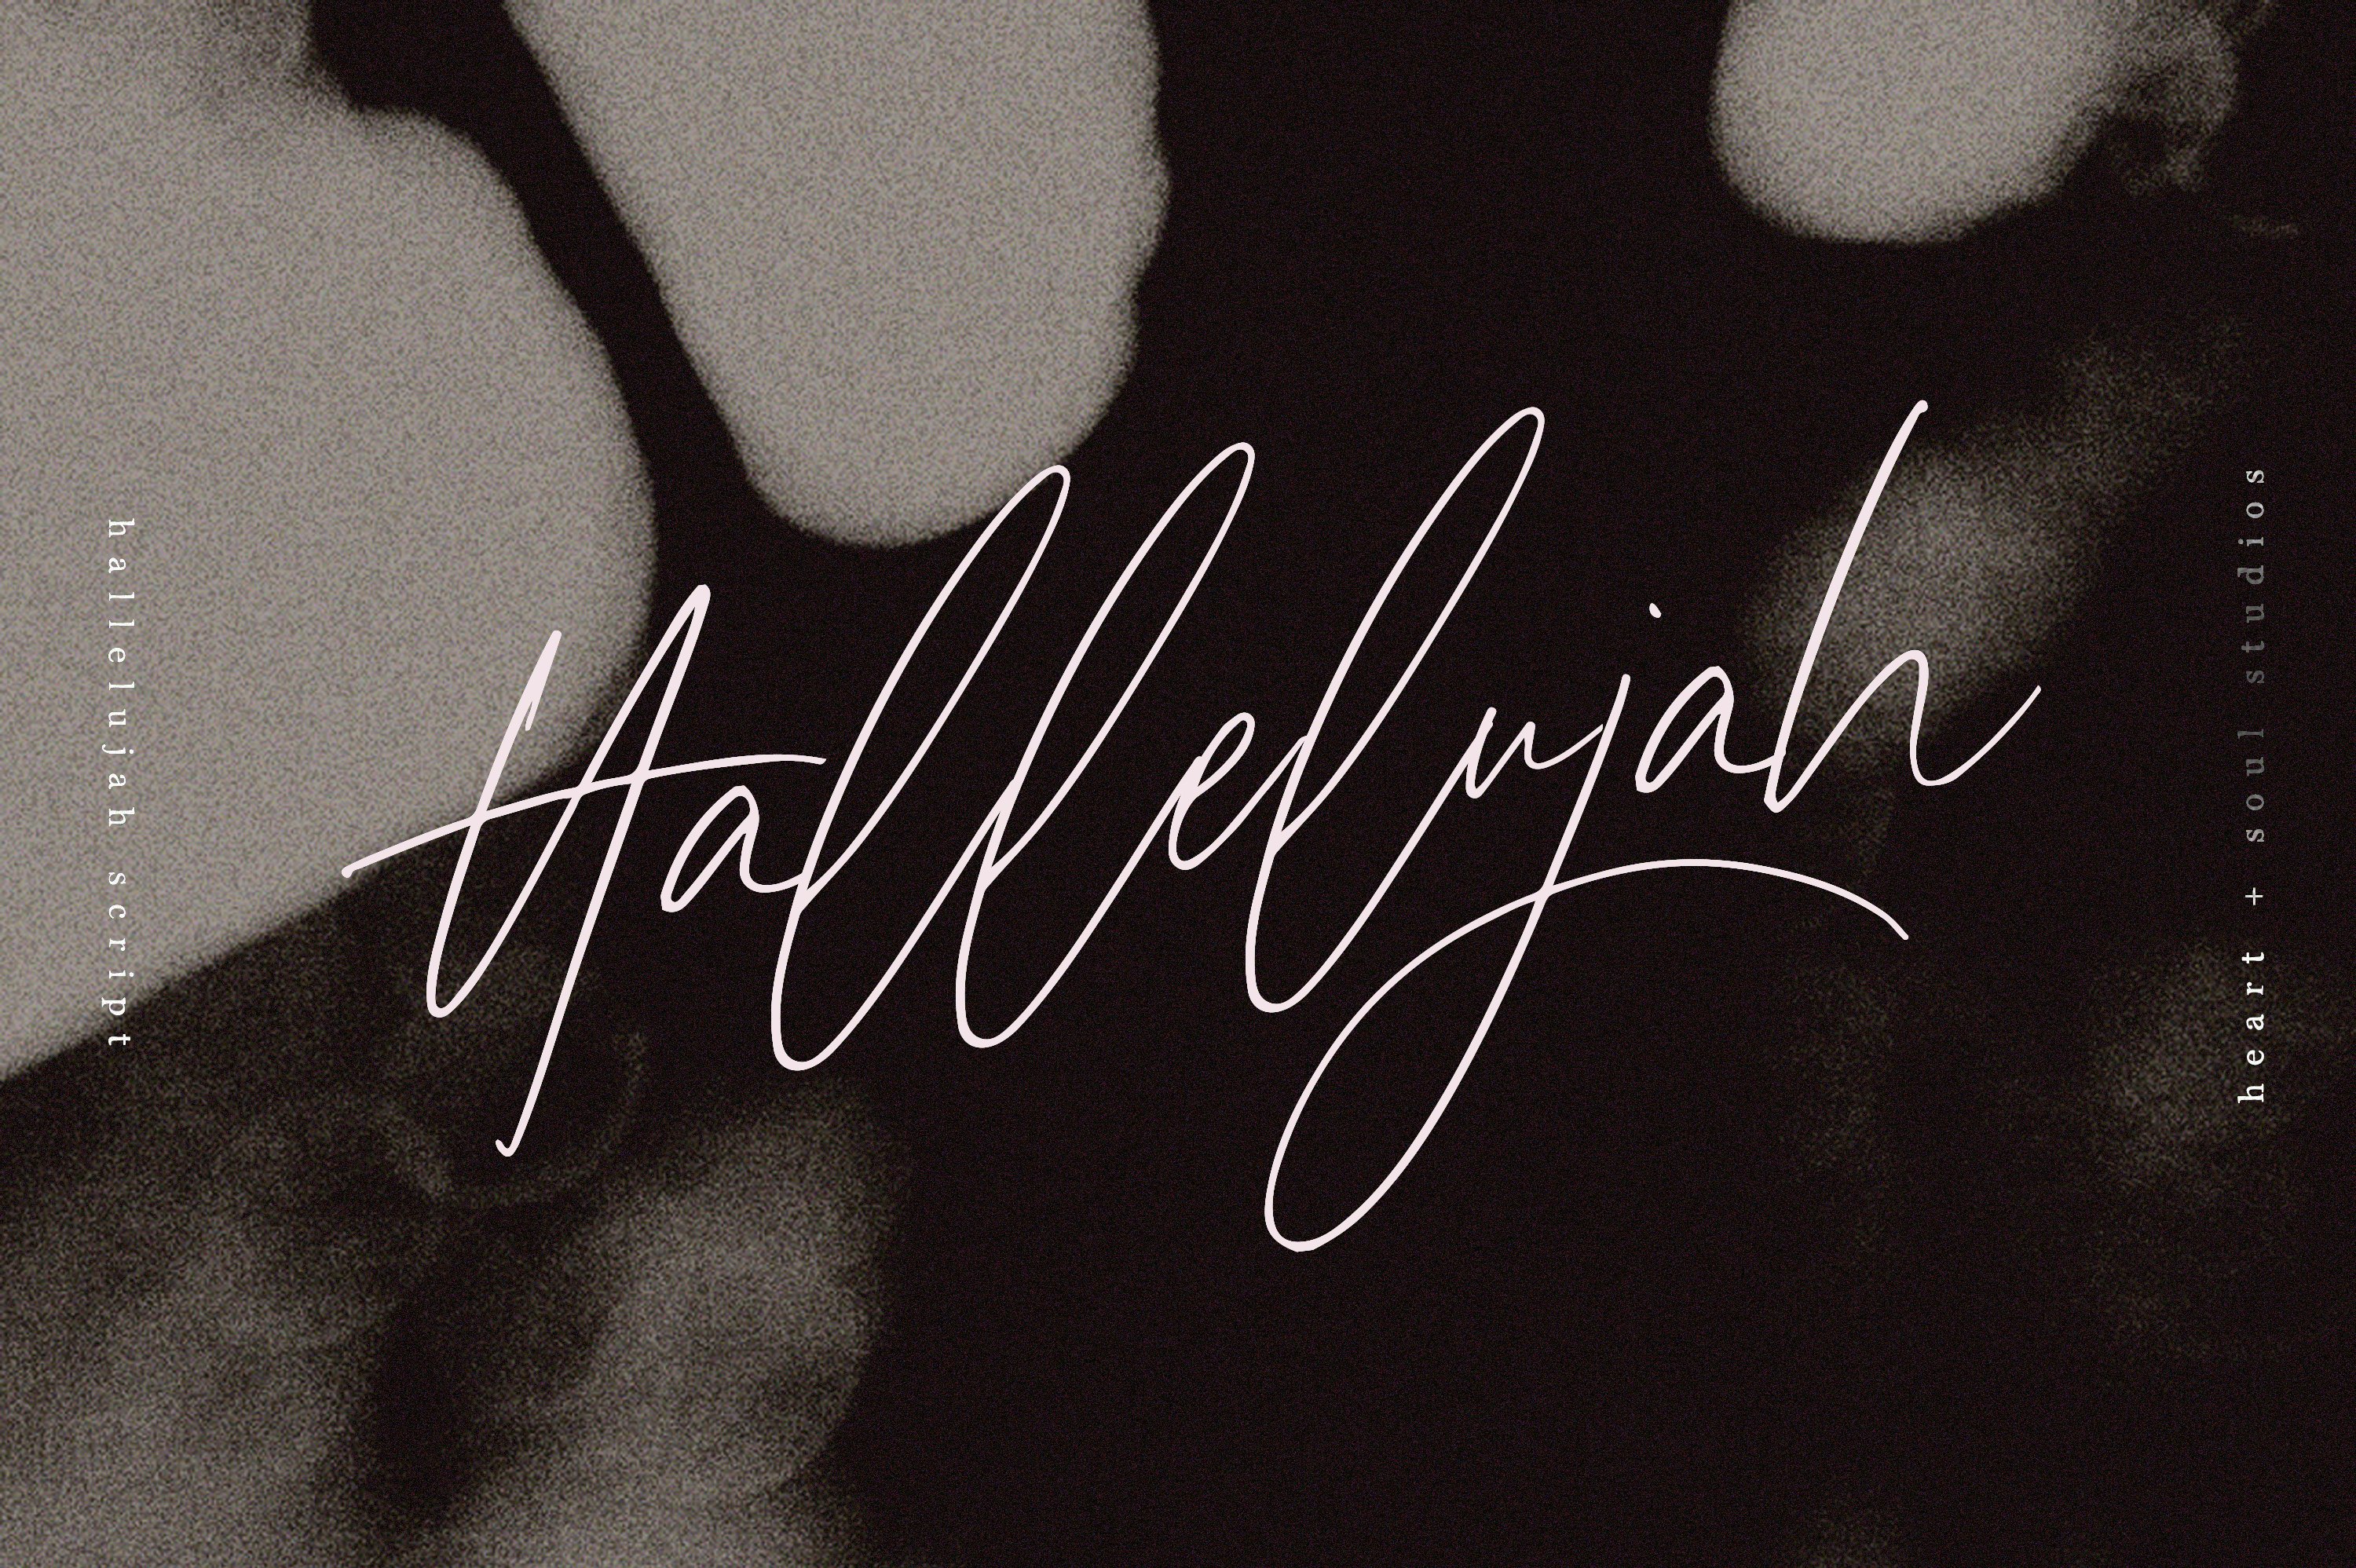 Hallelujah Script | Handwritten Font cover image.